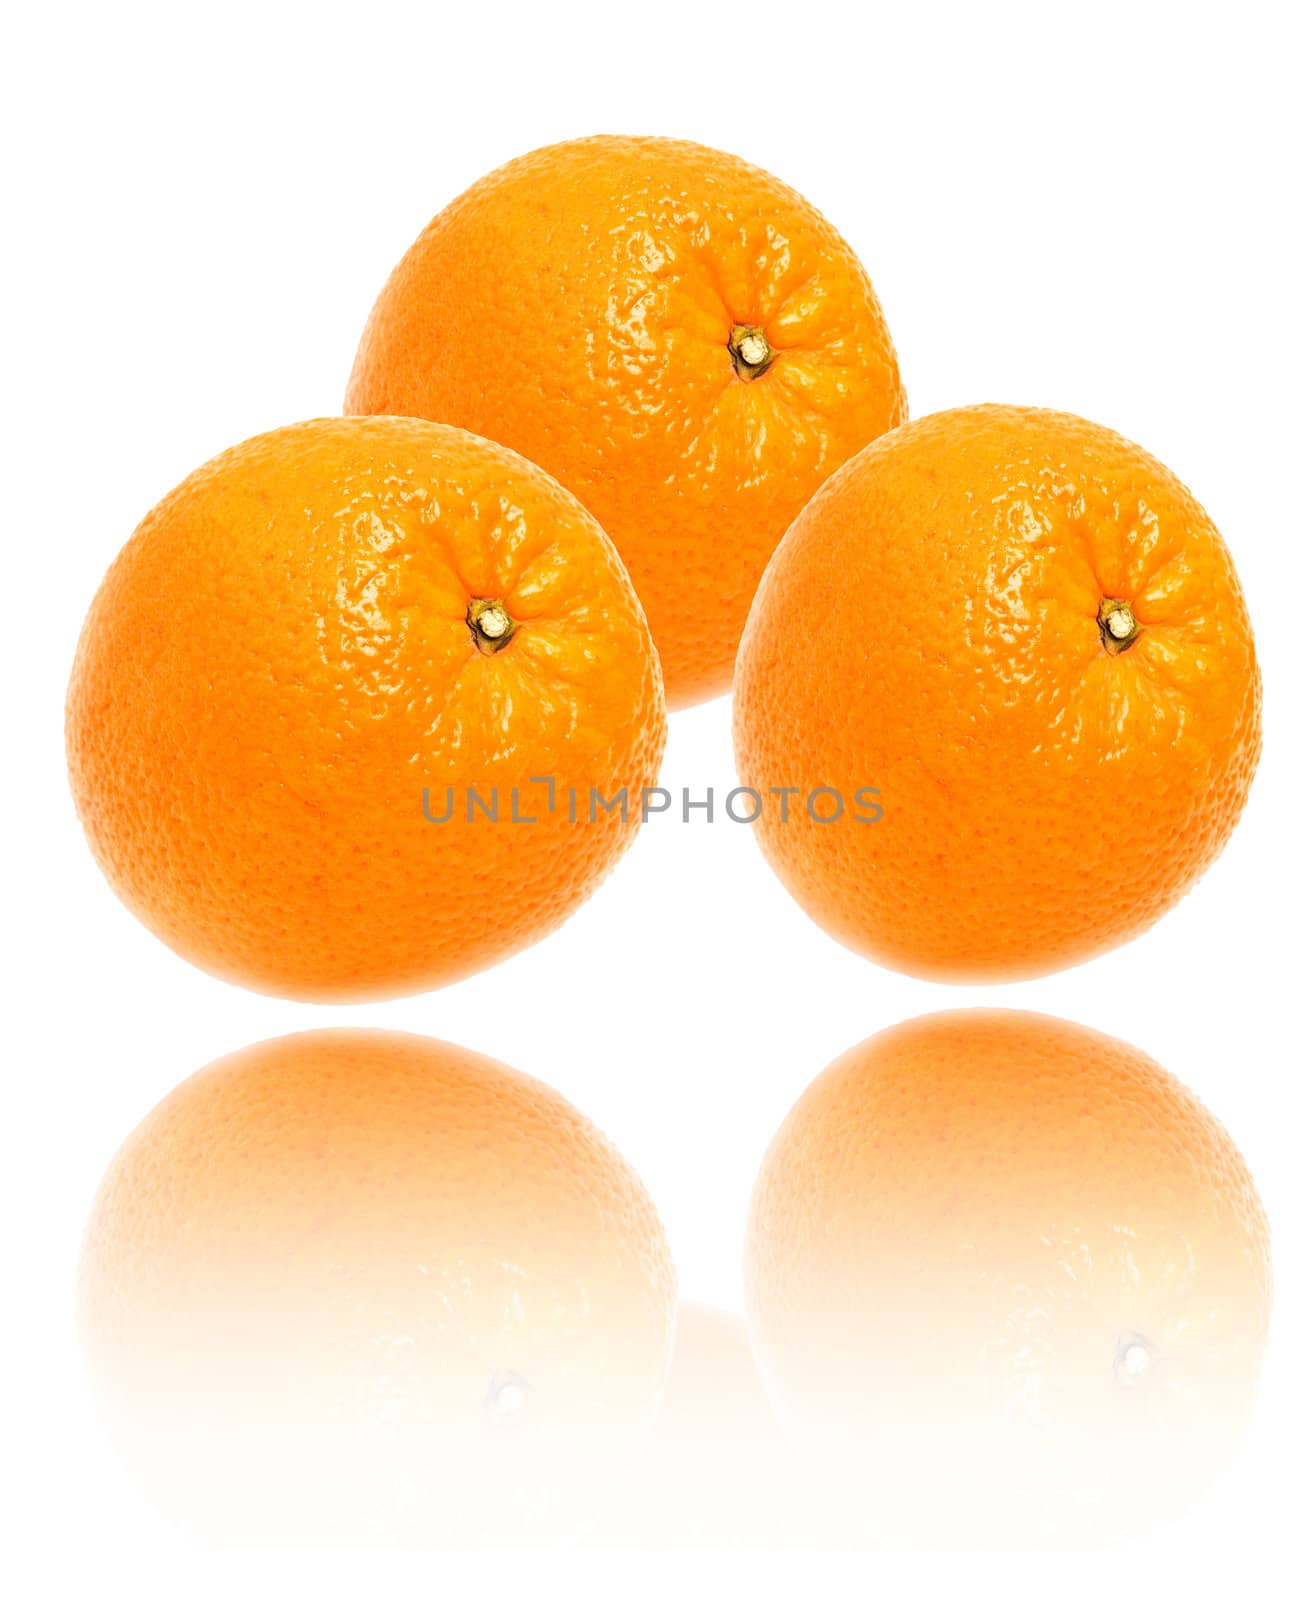 oranges by schankz